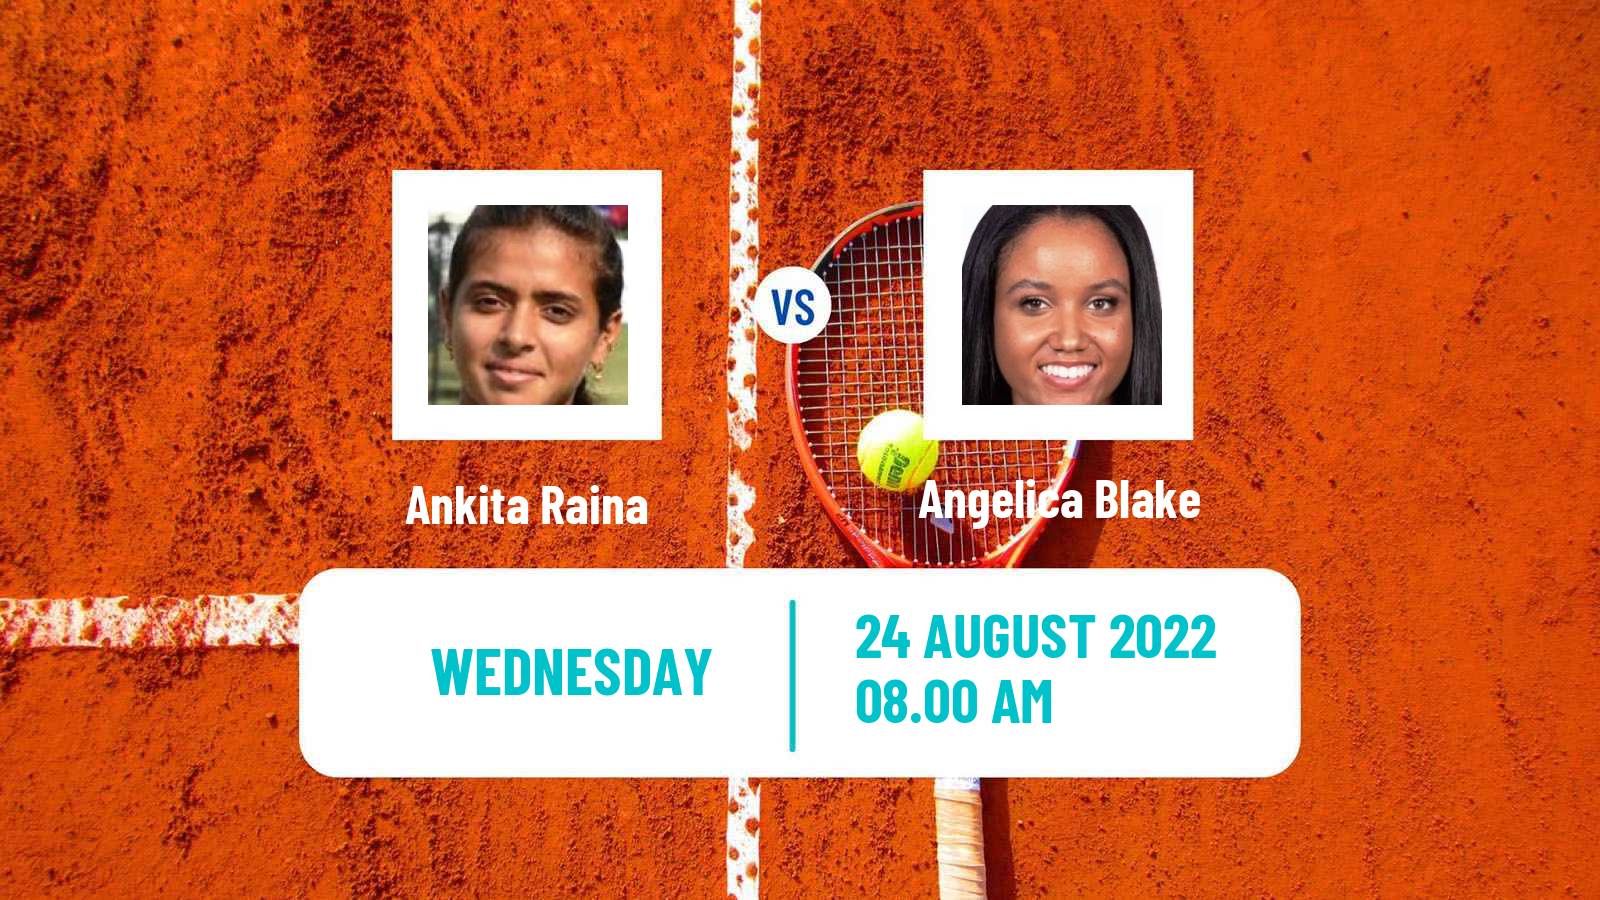 Tennis ITF Tournaments Ankita Raina - Angelica Blake